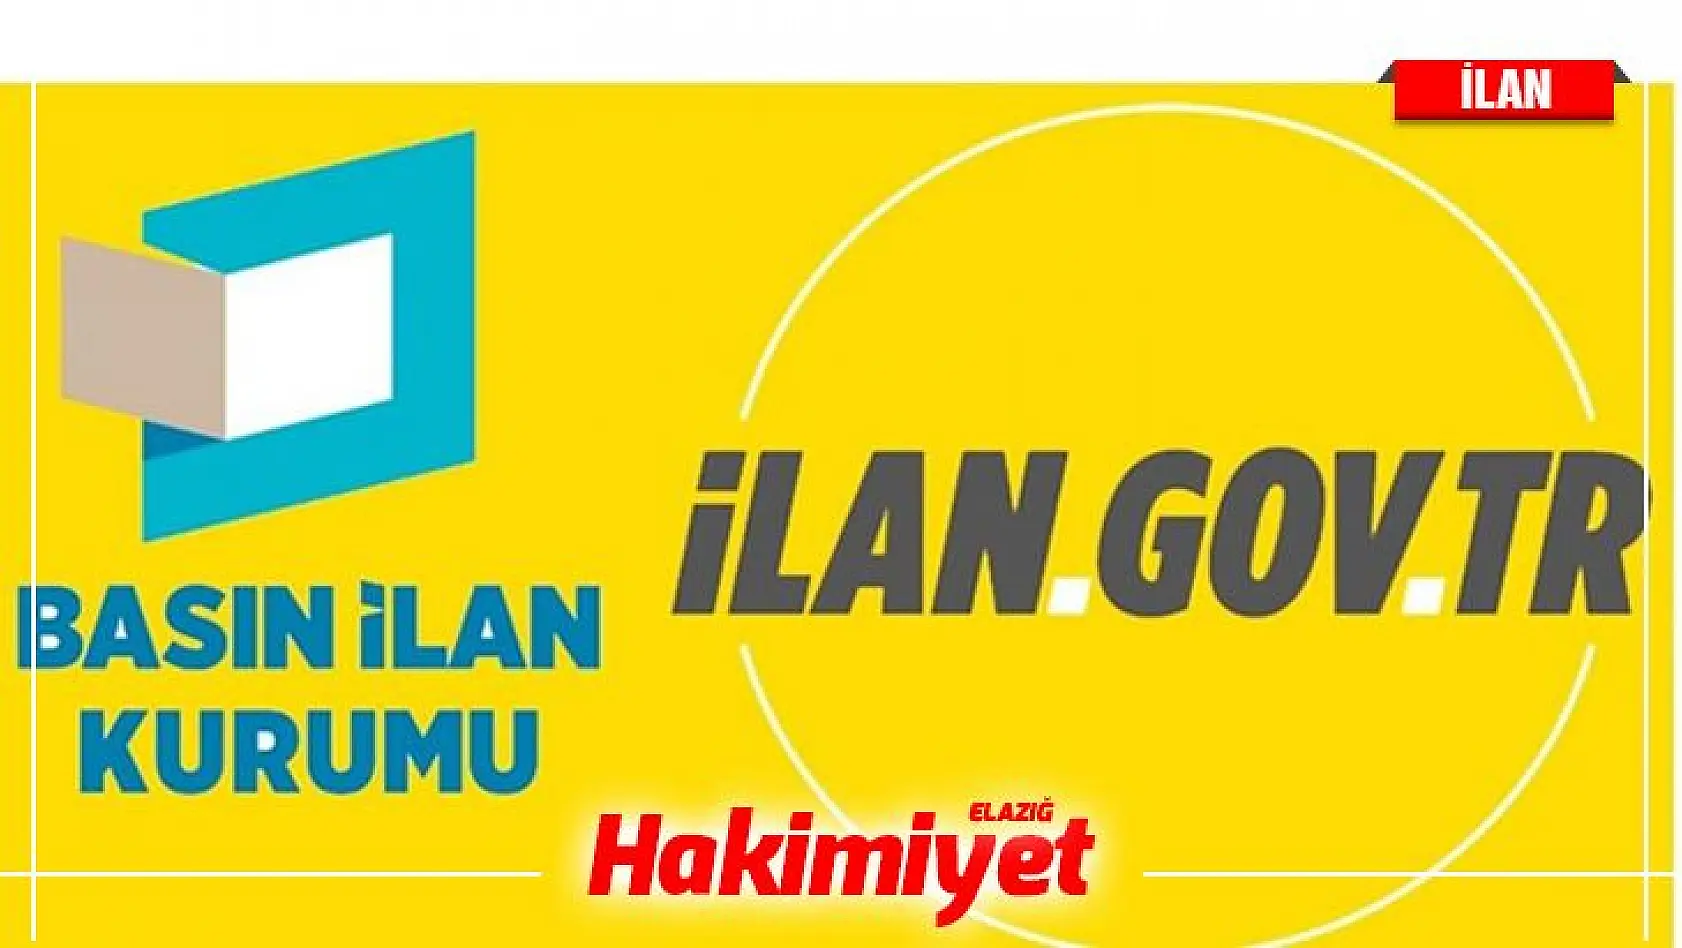 İstanbul Ayvansaray Üniversitesi 33 Öğretim Üyesi alacak